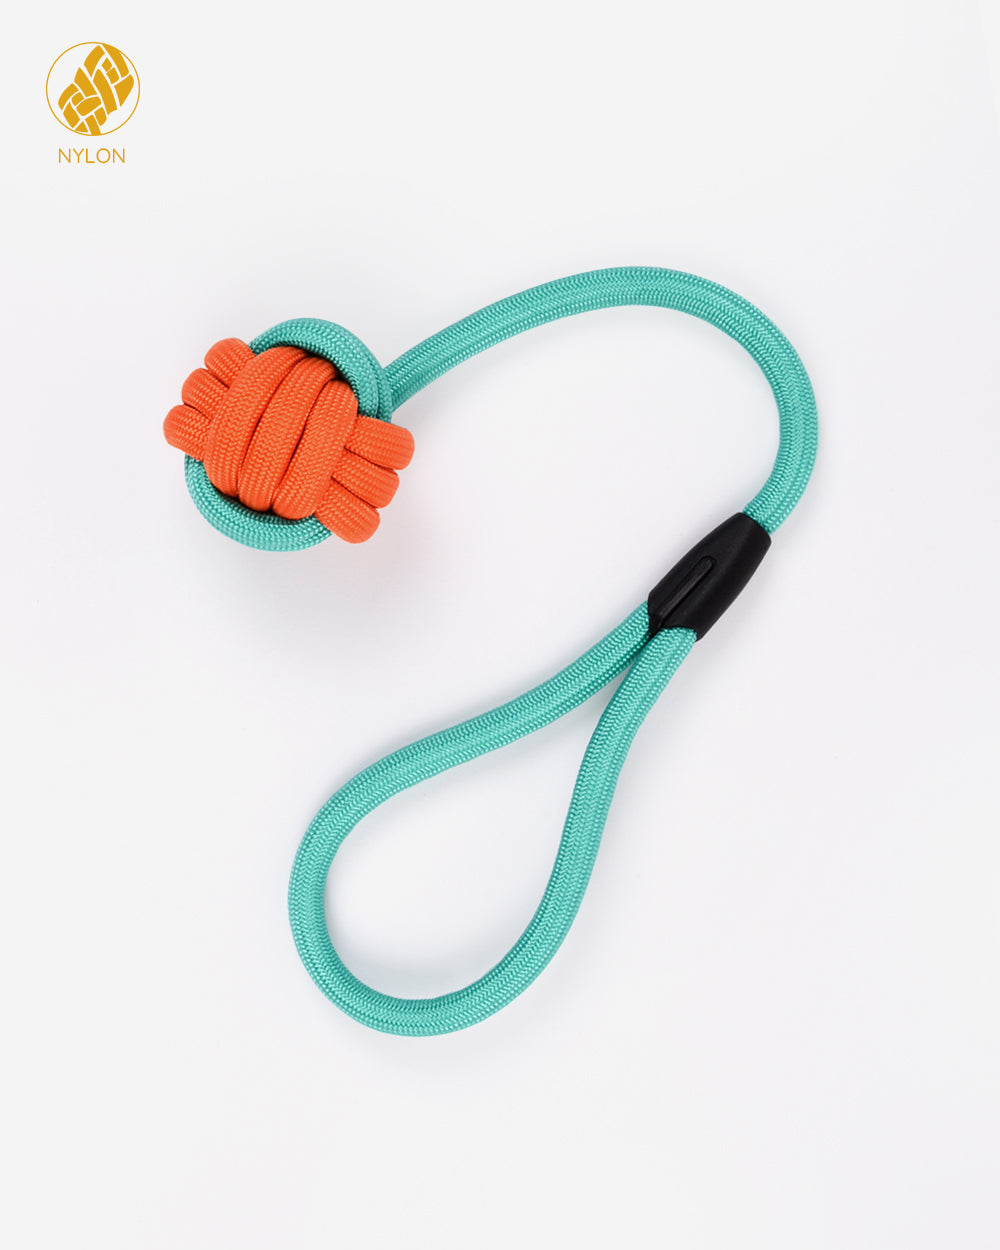 尼龍繩和球拖輪玩具帶環 - 橙綠色